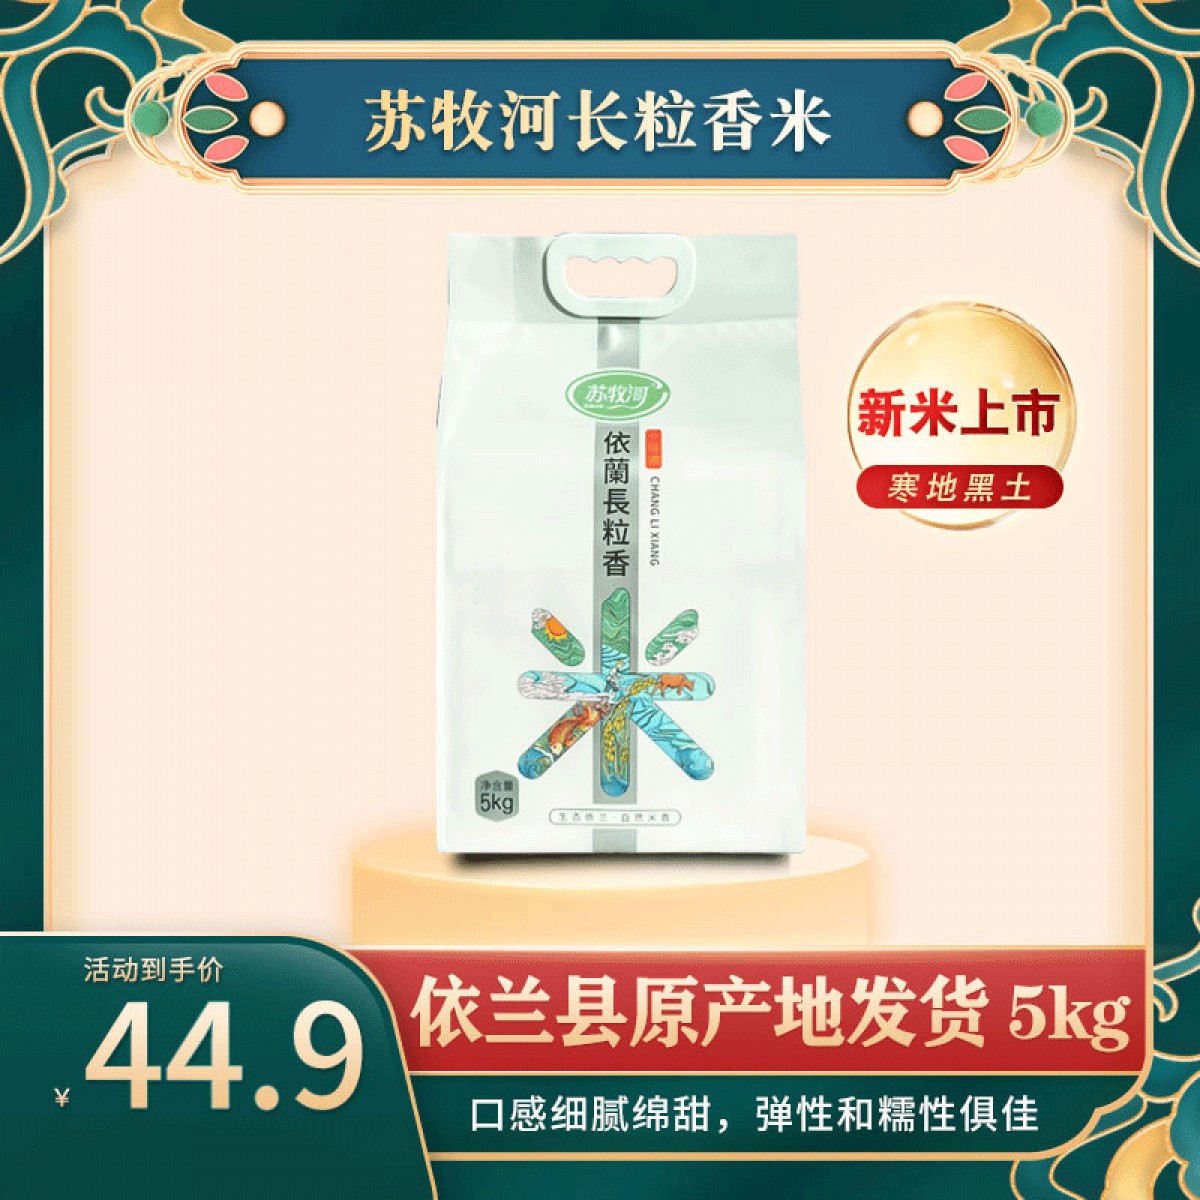 龙江特产 苏牧河长粒香米 5kg 晶莹剔透、油亮溢香 包邮